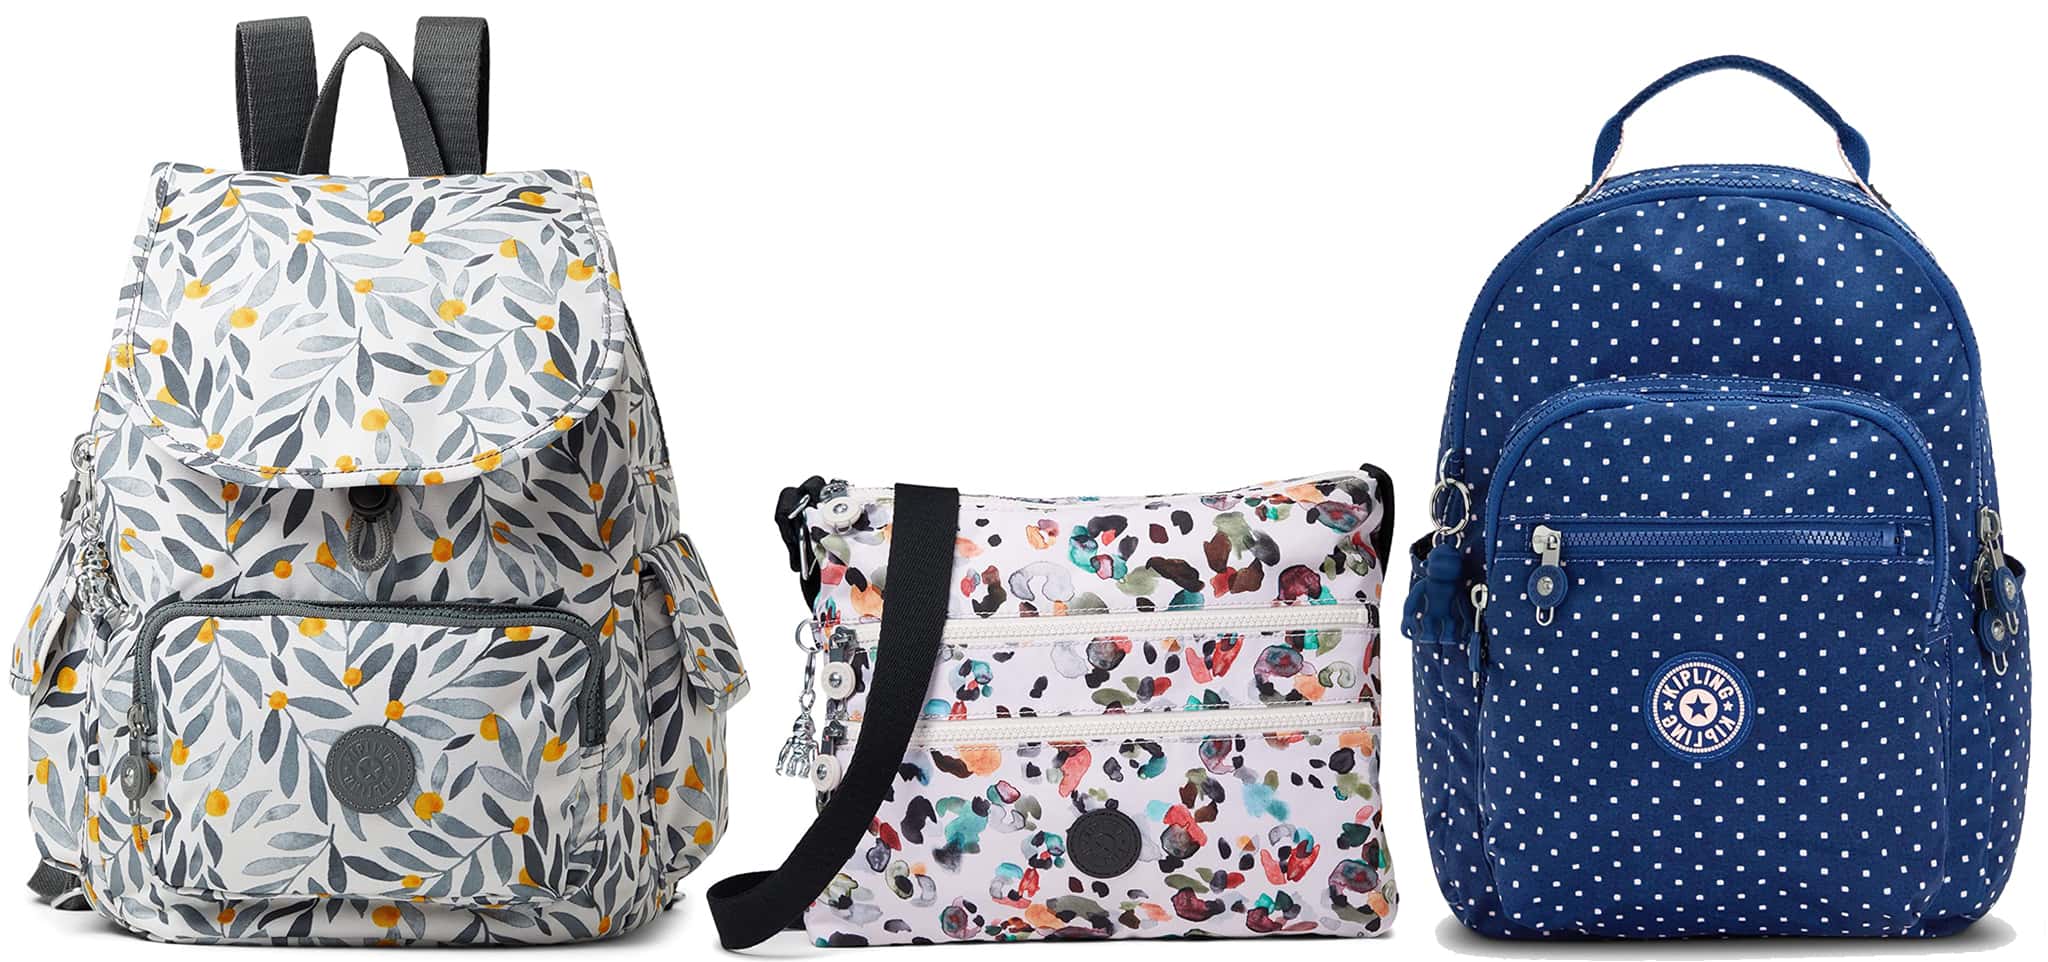 Kipling City Pack Small Backpack; Kipling Alvar Crossbody Bag; Kipling Seoul Small Backpack